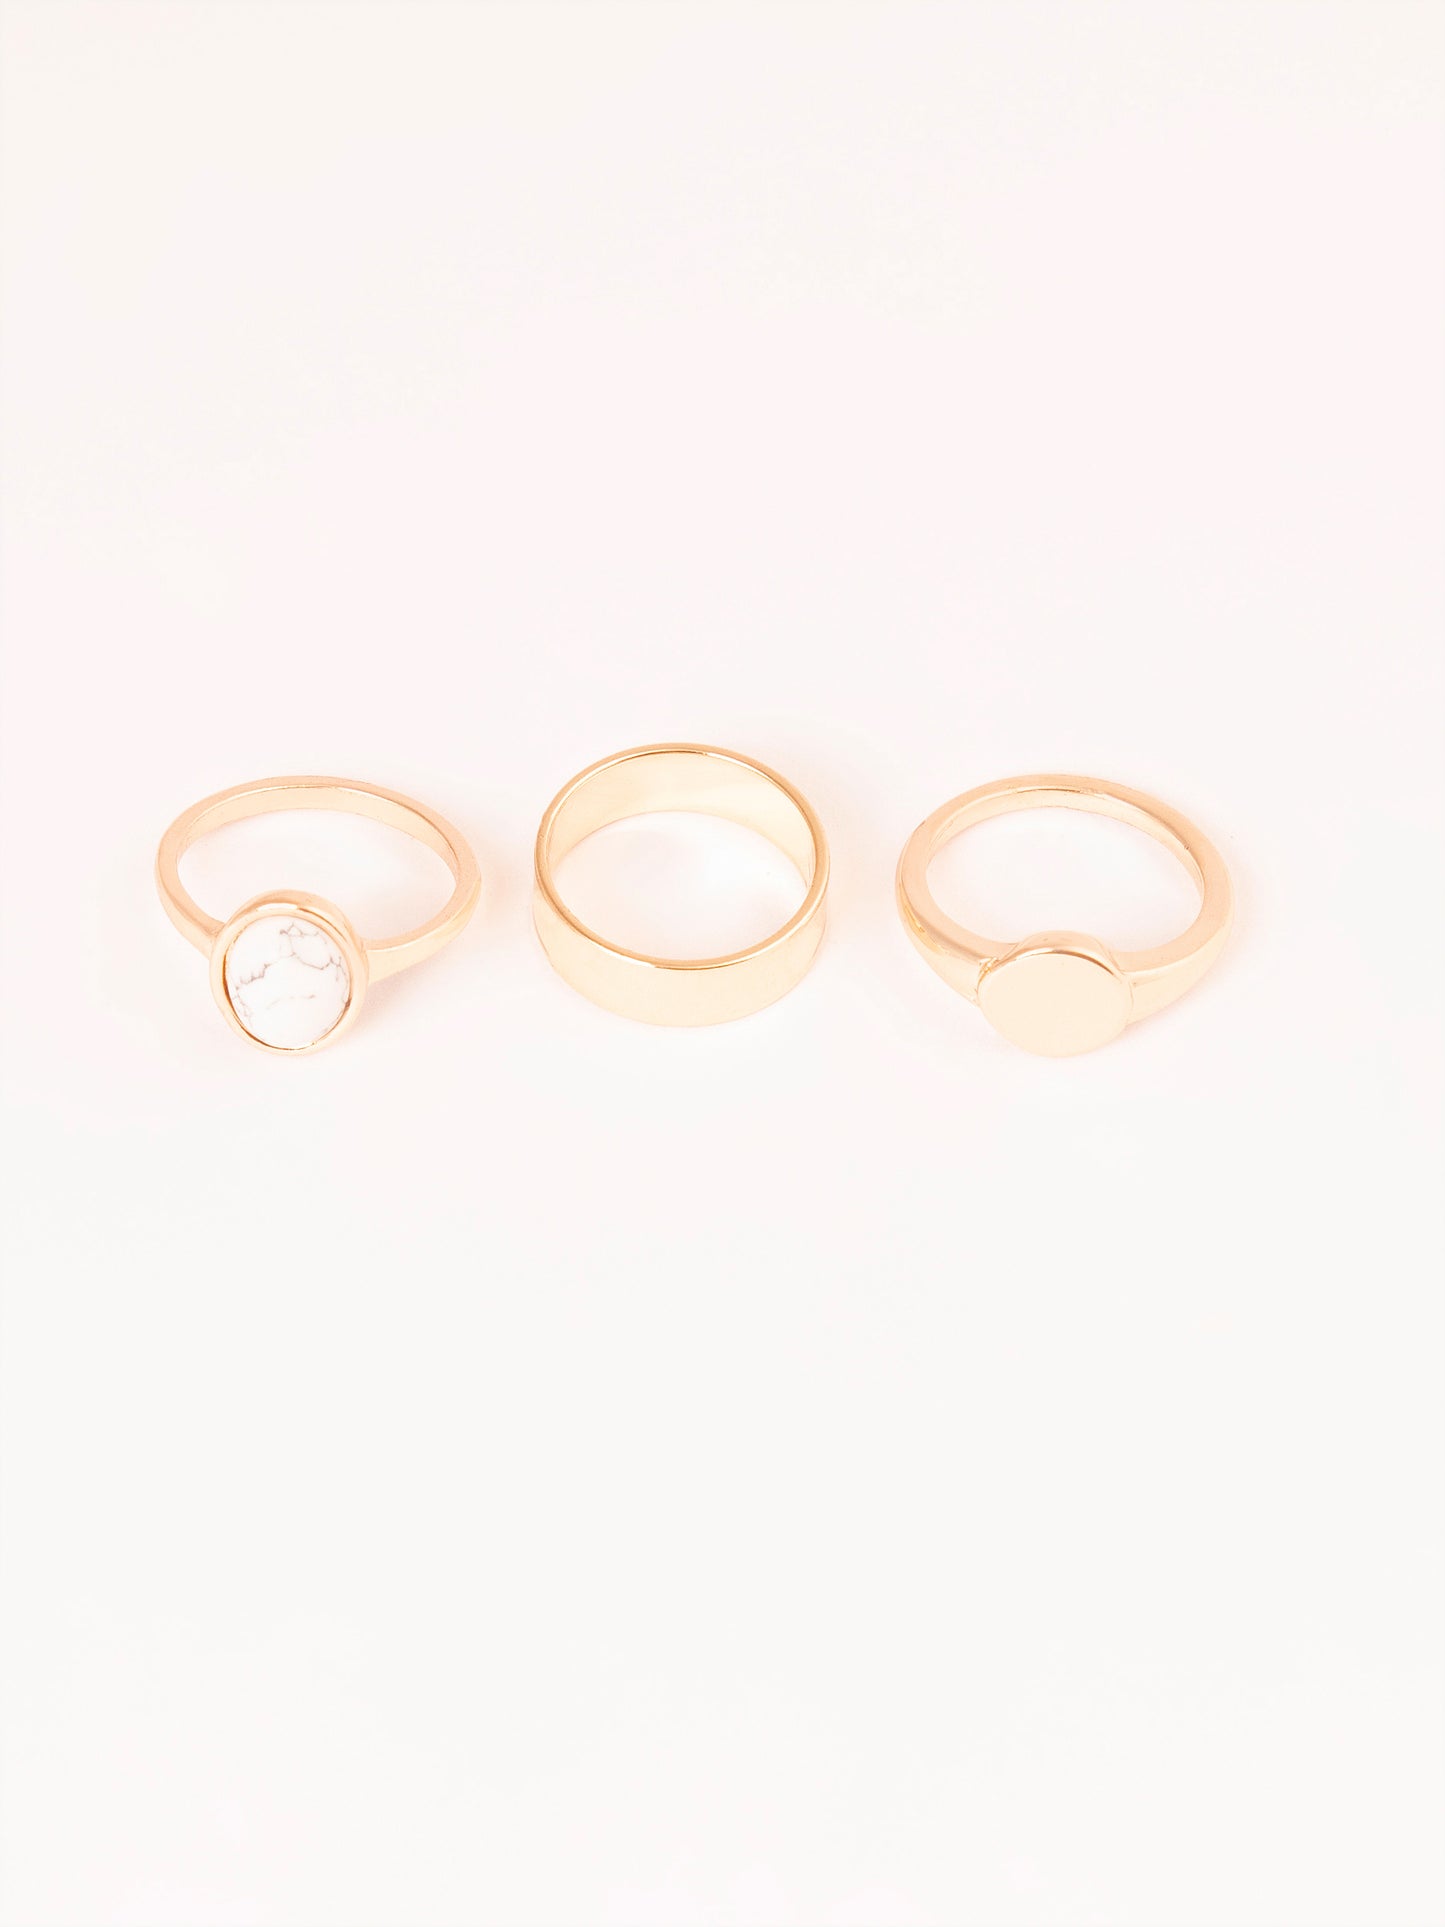 Vintage Ring Set